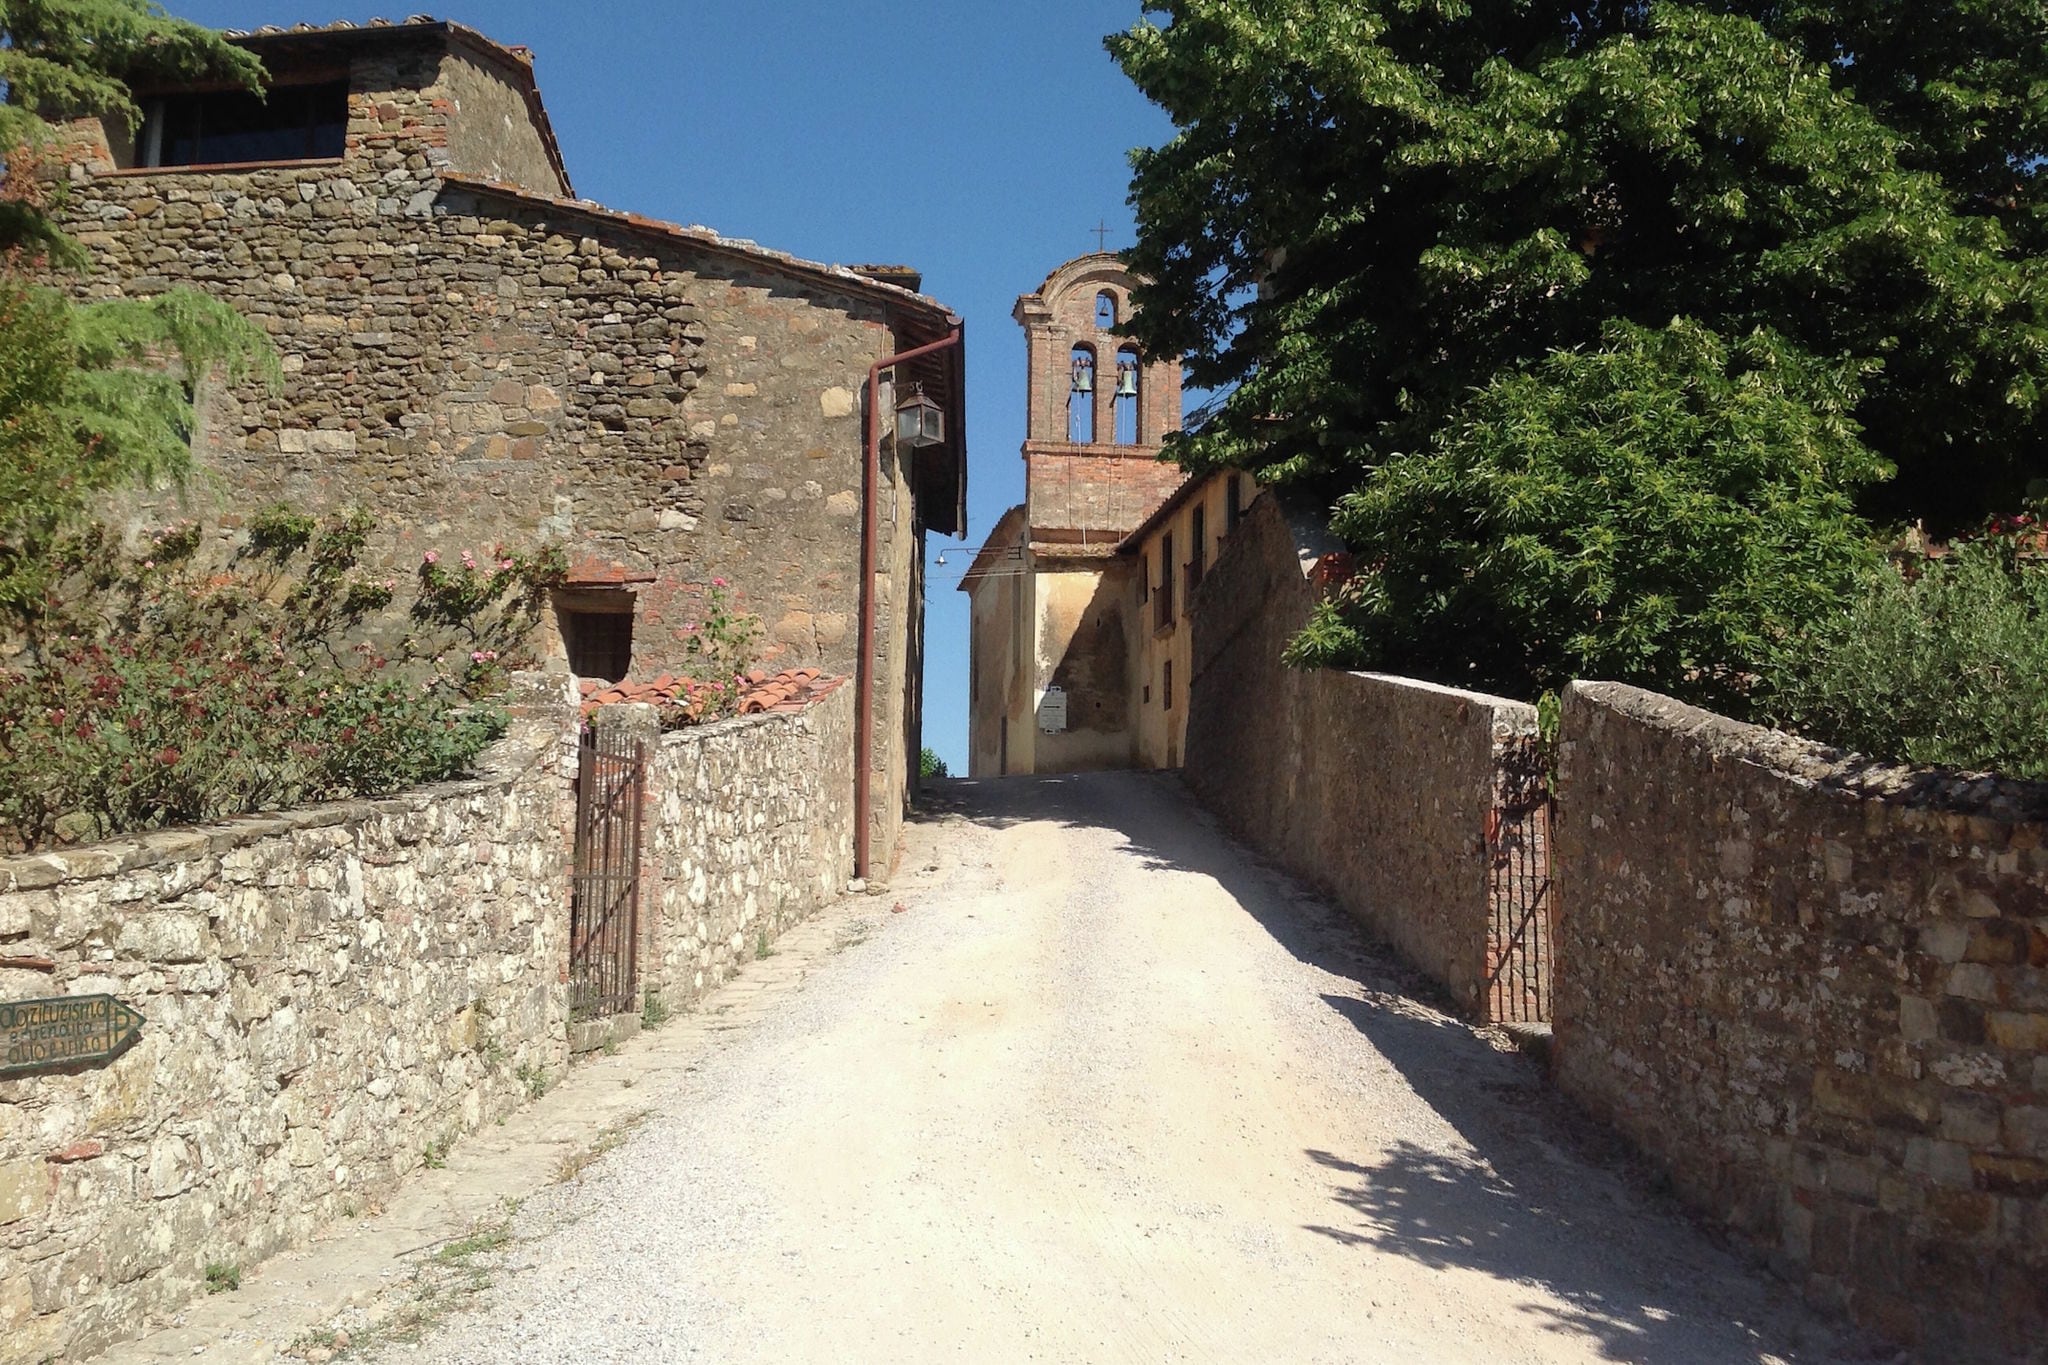 Historisch vakantiehuis in Toscane met open haard